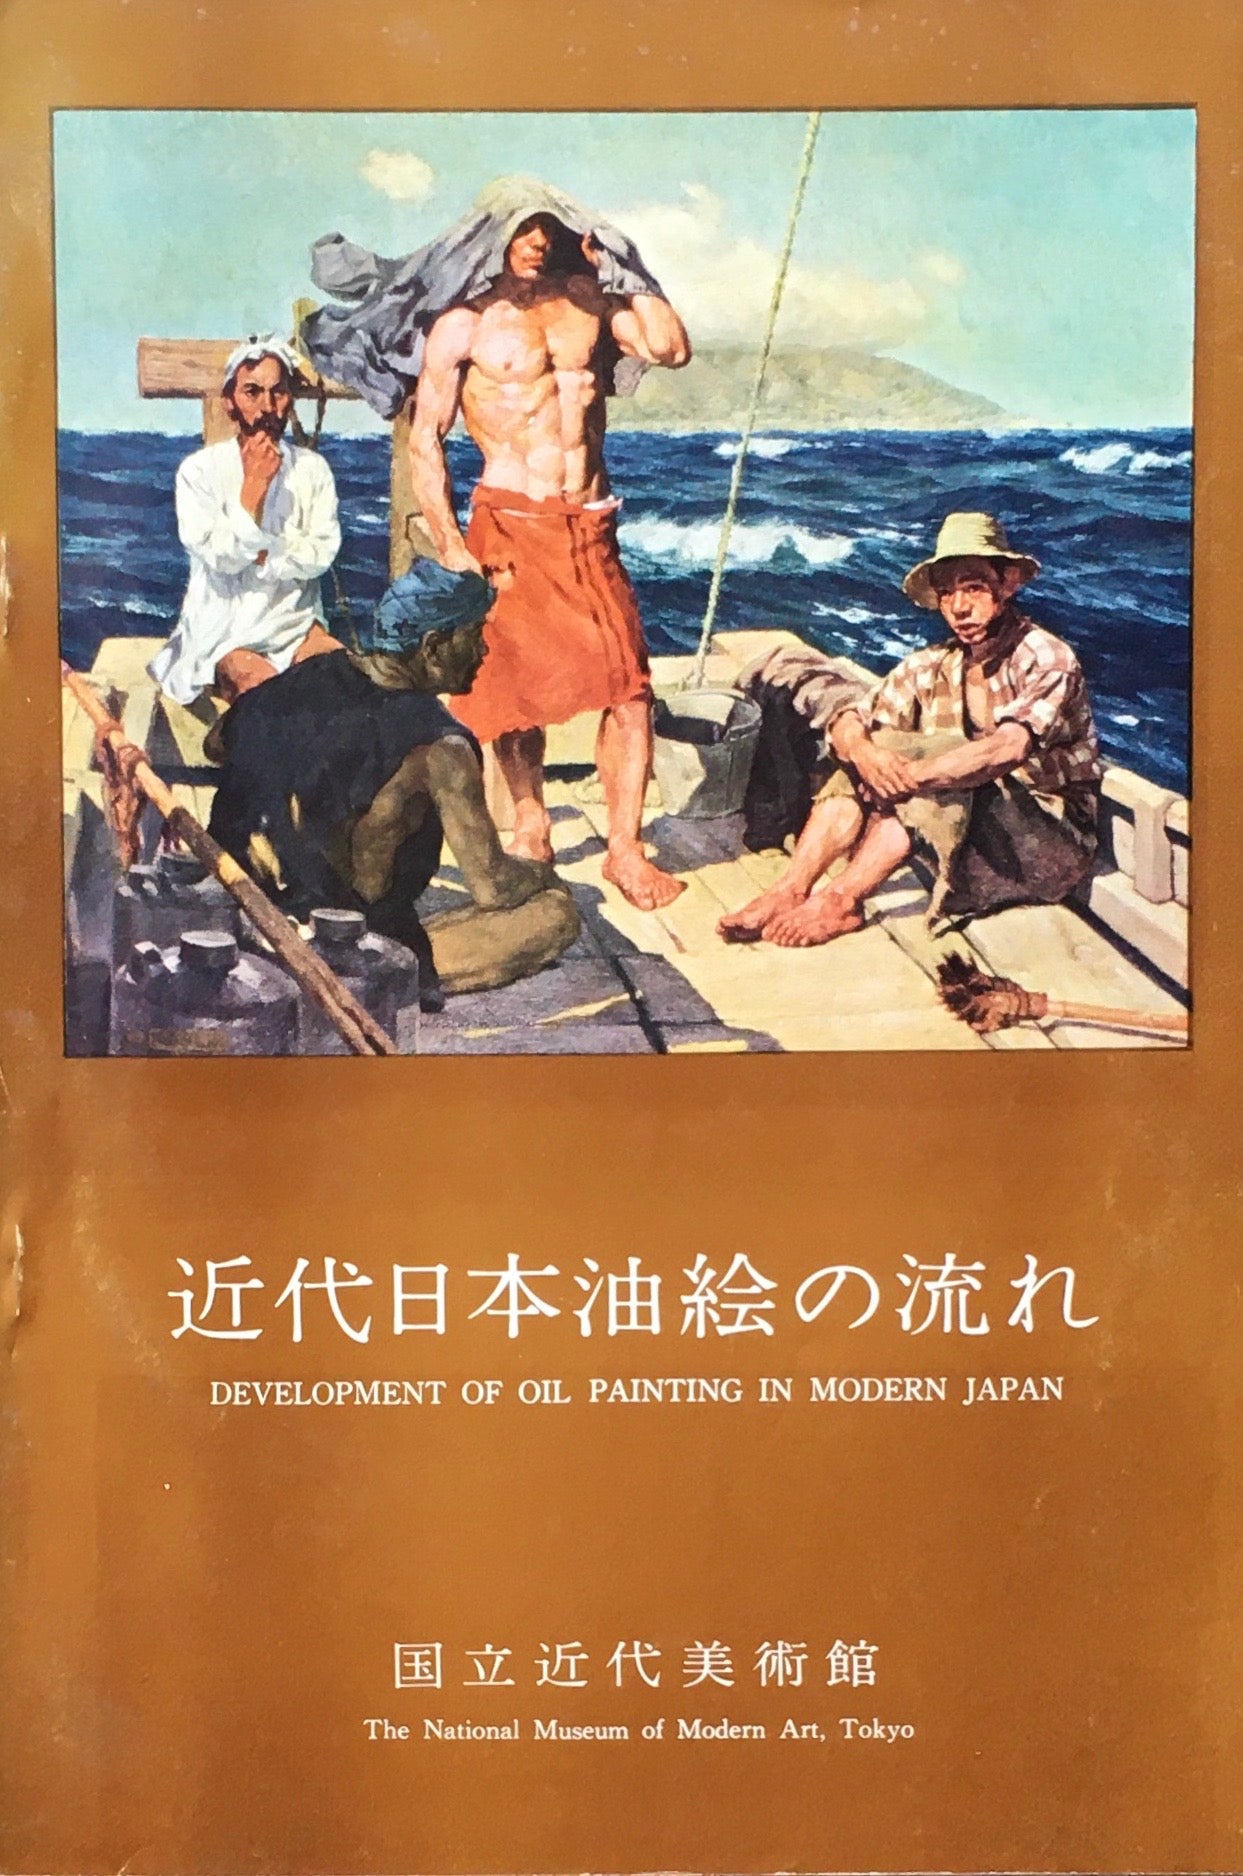 近代日本美術代表作品シリーズⅠ　–　近代日本油絵の流れ　shop　国立近代美術館　smokebooks